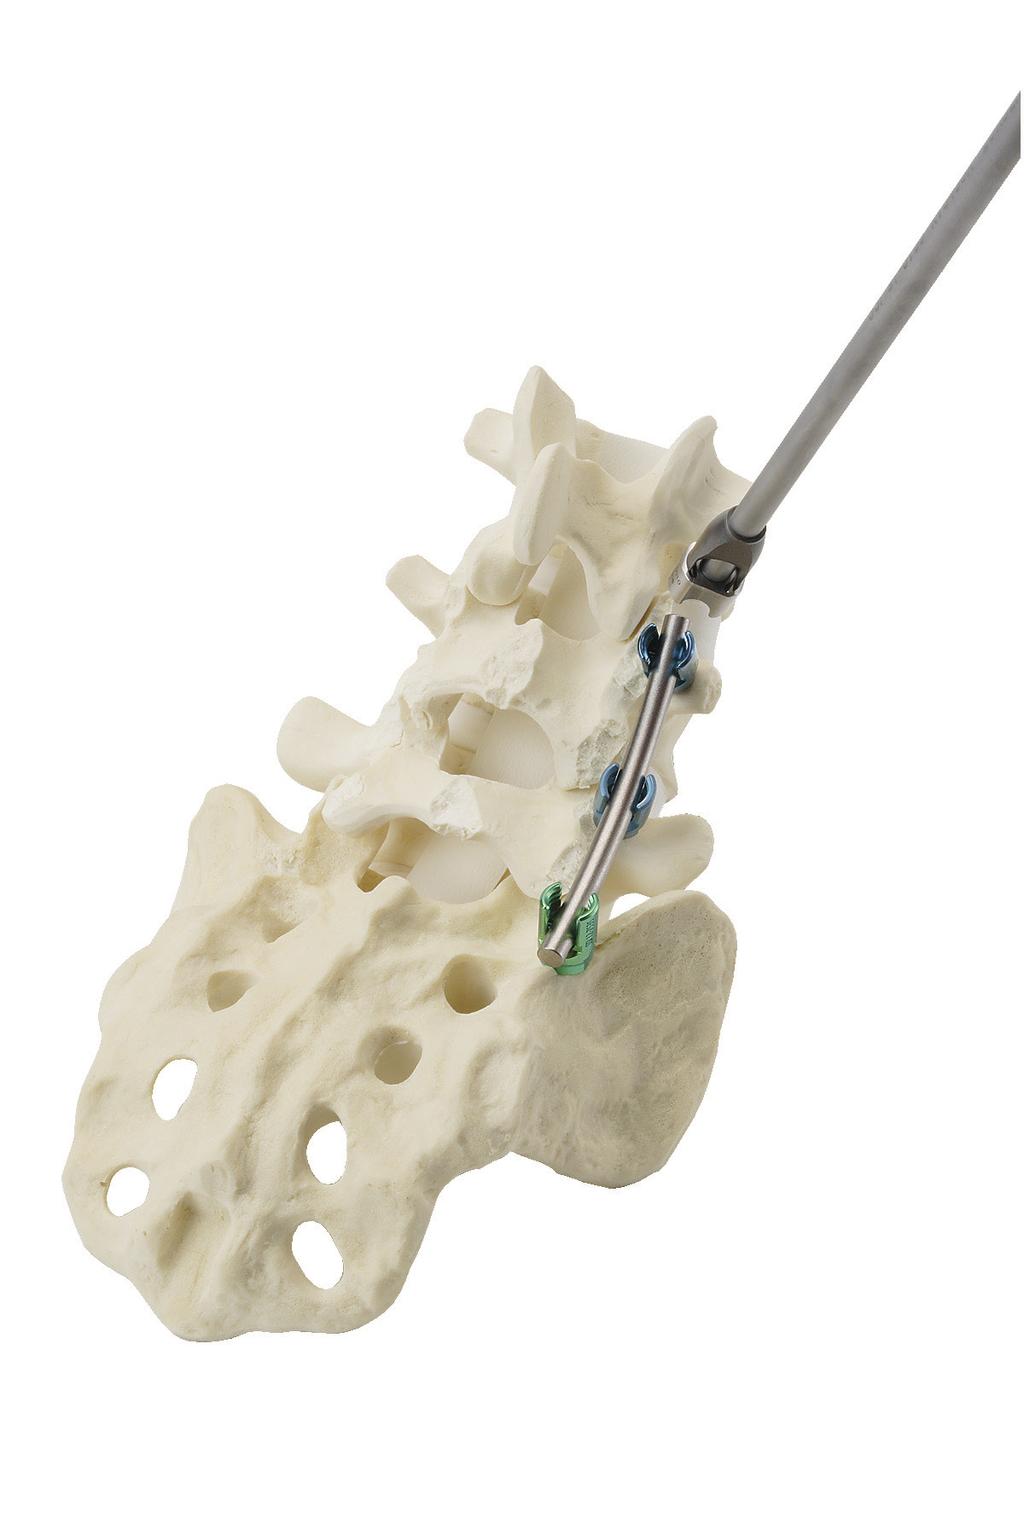 Malibu Pedicle Screw System Surgical Technique PASSO 8 8A 8B Compressão e Distração (opcional) Se for desejada compressão ou distração das vértebras, aperte completamente e bloqueie o parafuso que